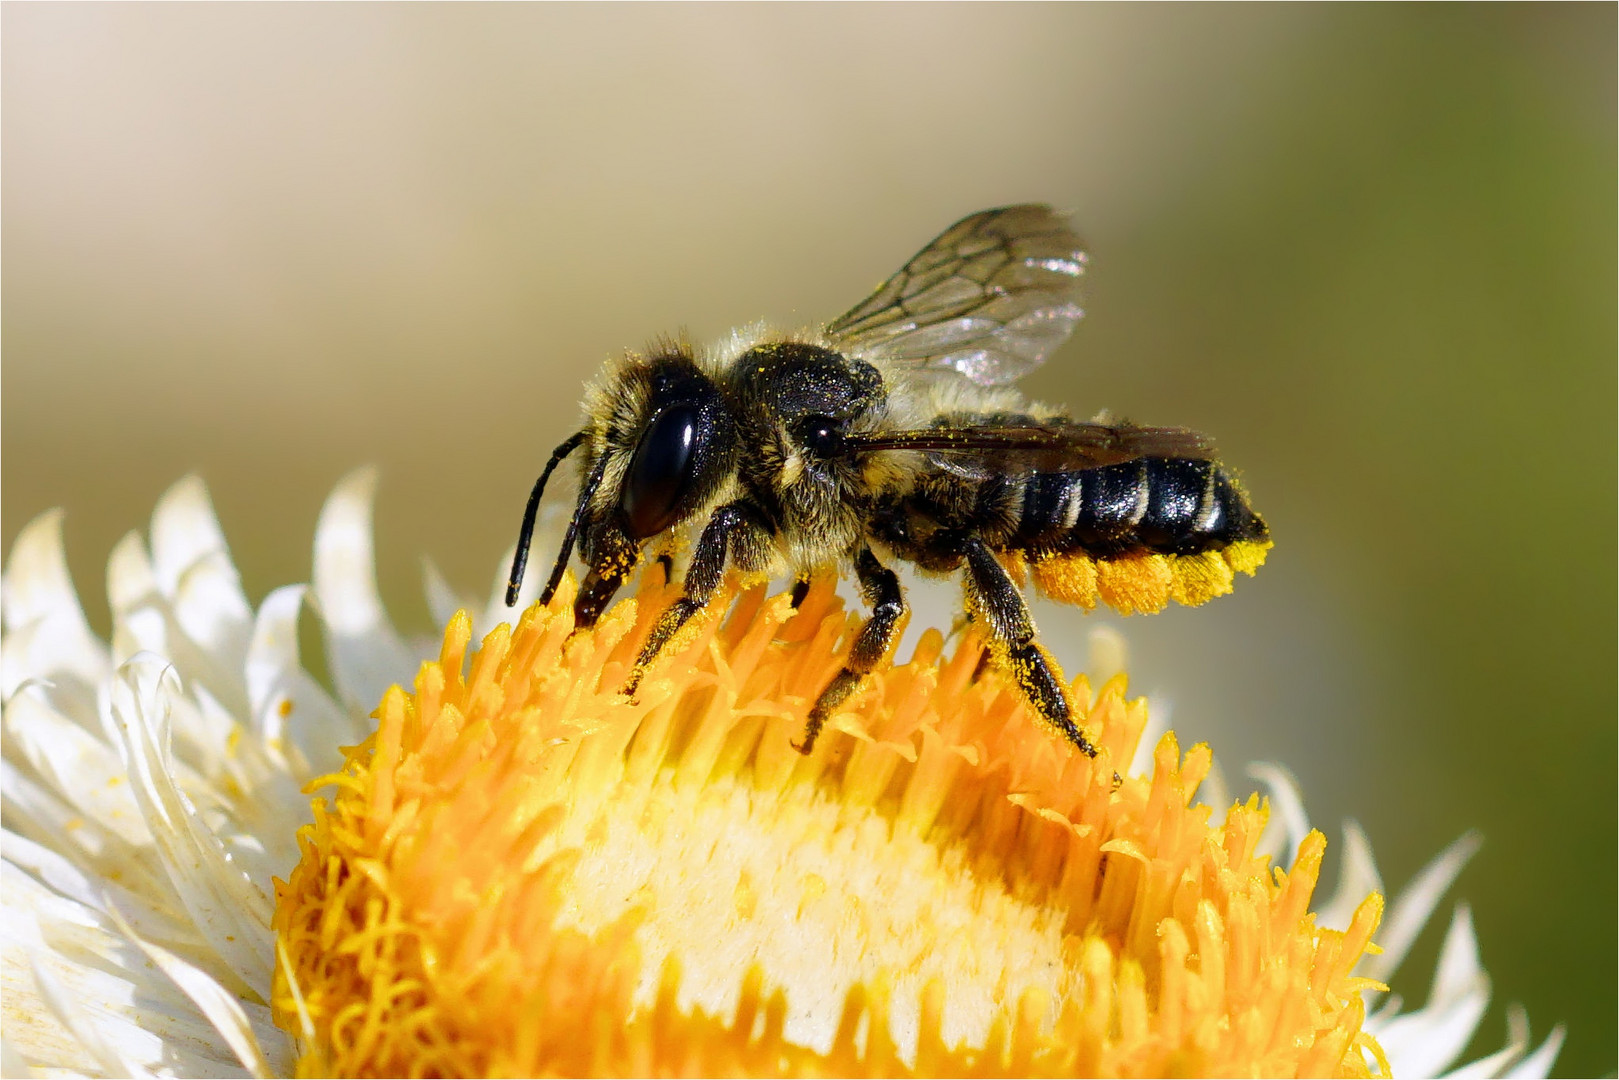 Gelbe Bauchbürste - Biene mit gesammelten Pollen